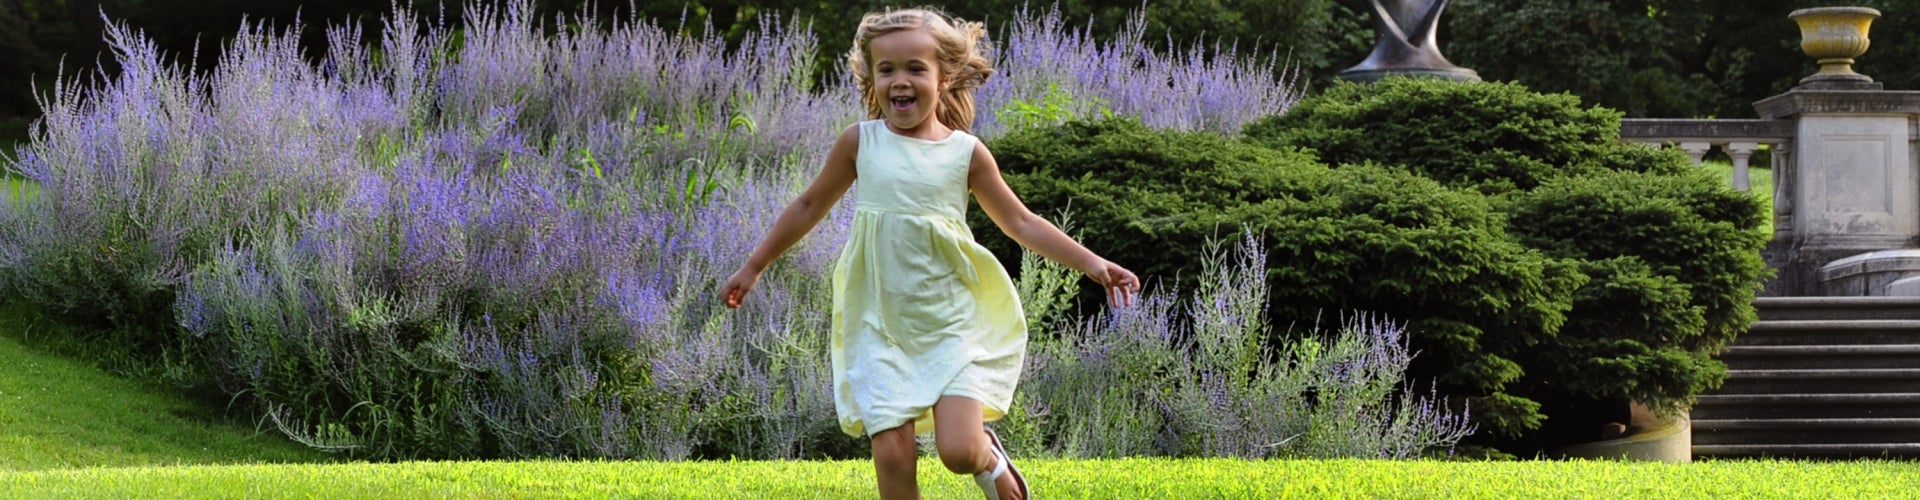 A young girl running through a public garden.